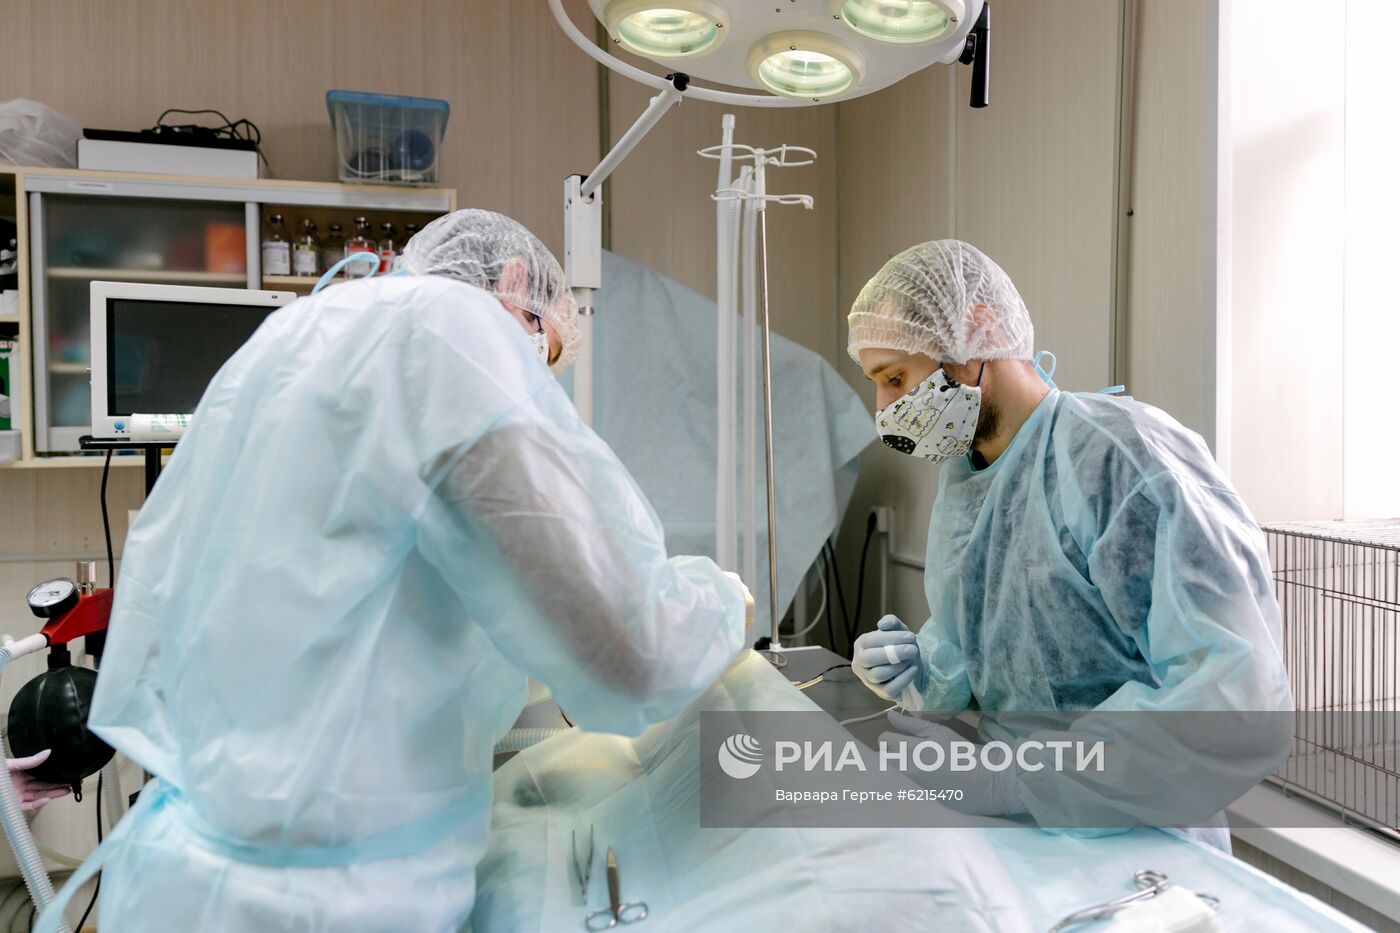 Работа ветеринарной клиники в Иванове